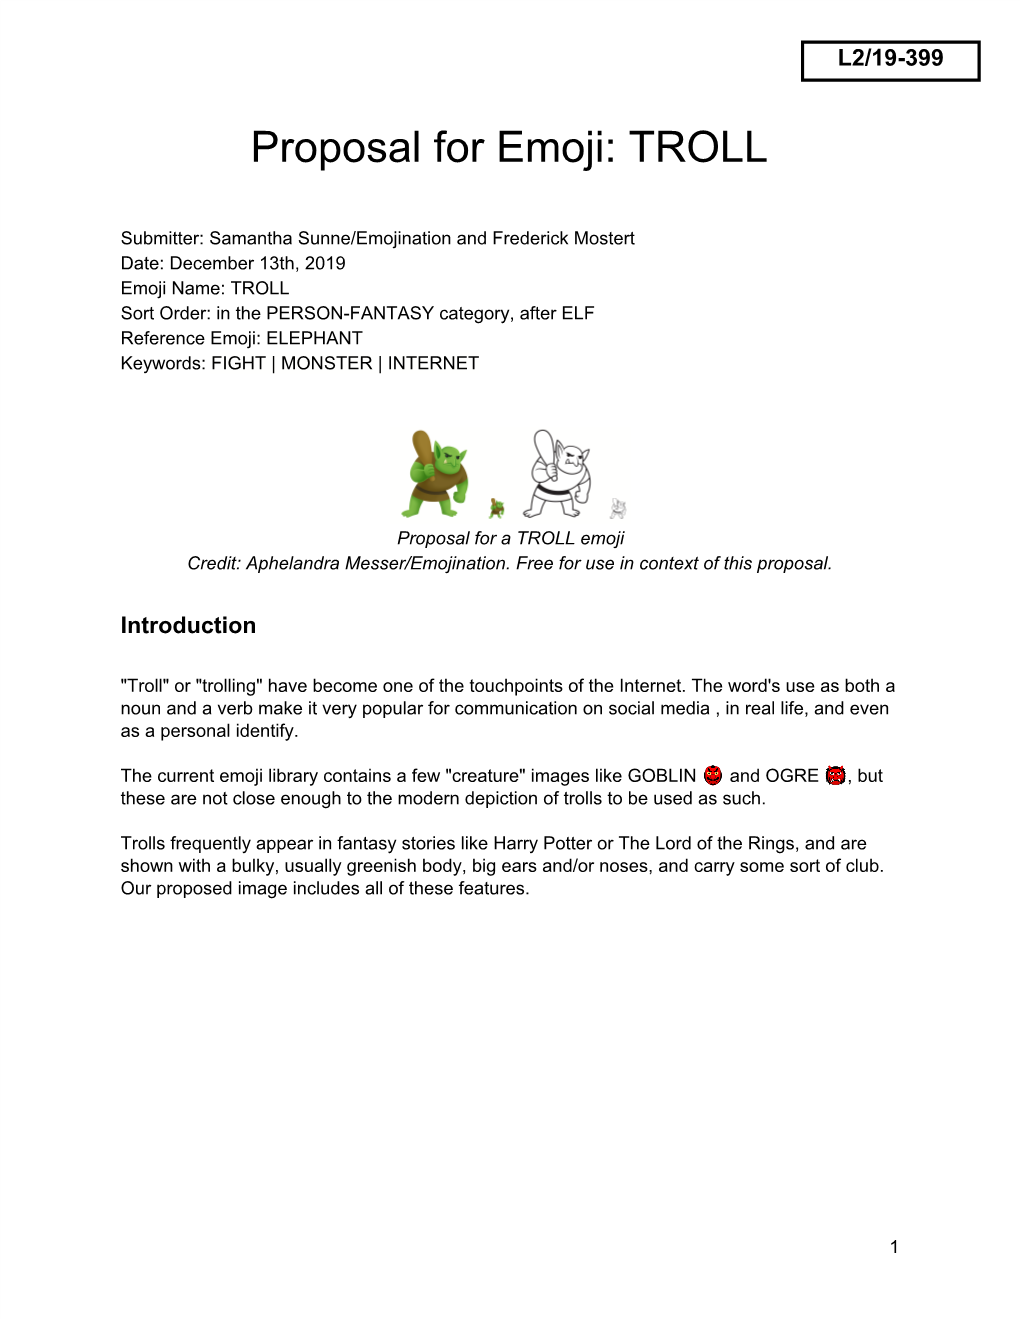 Proposal for Emoji: TROLL